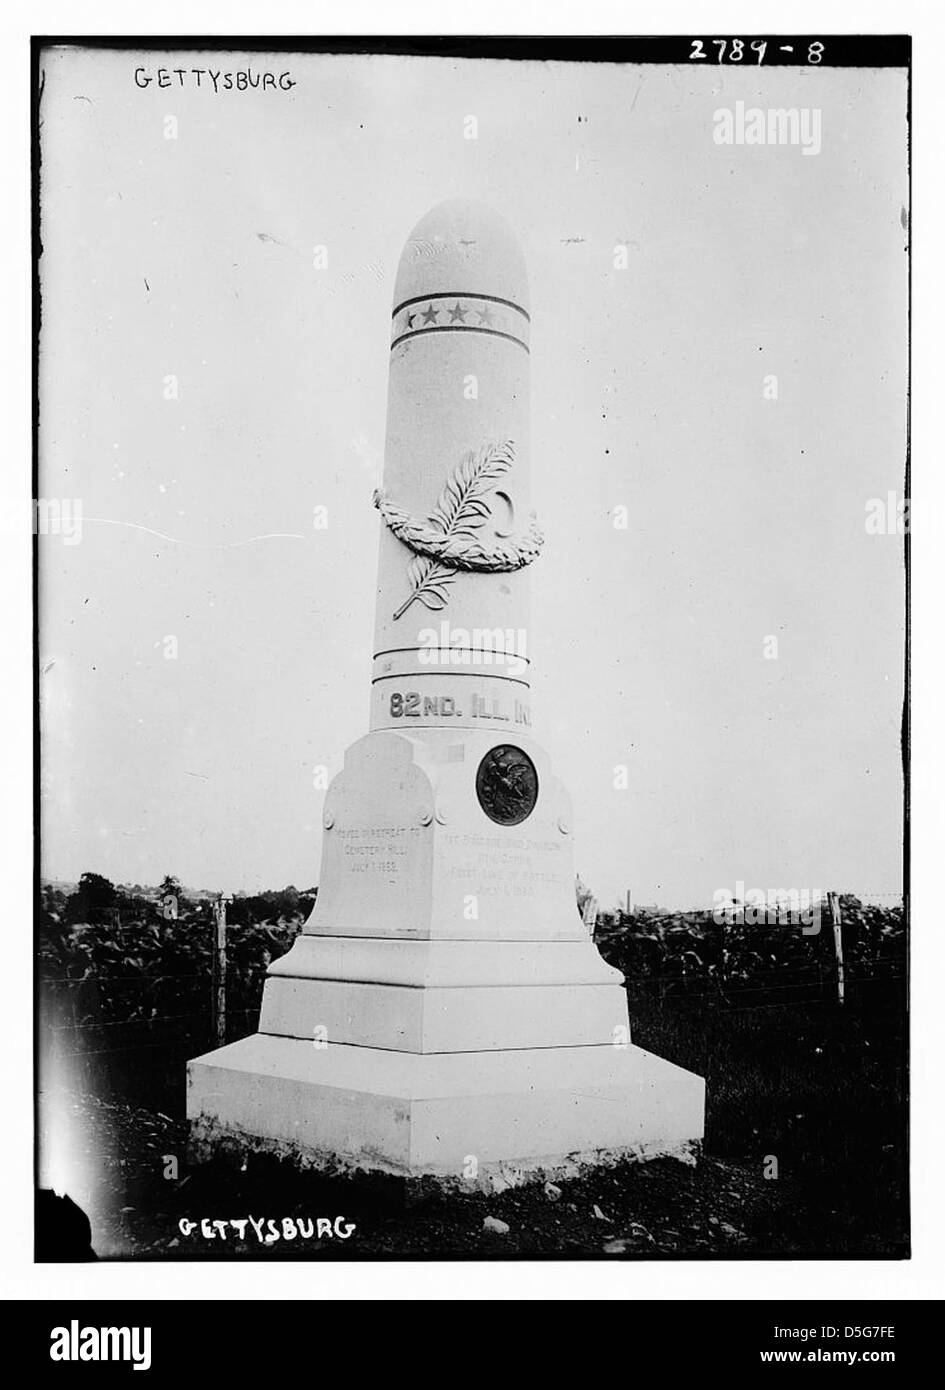 Gettysburg (LOC) Stock Photo